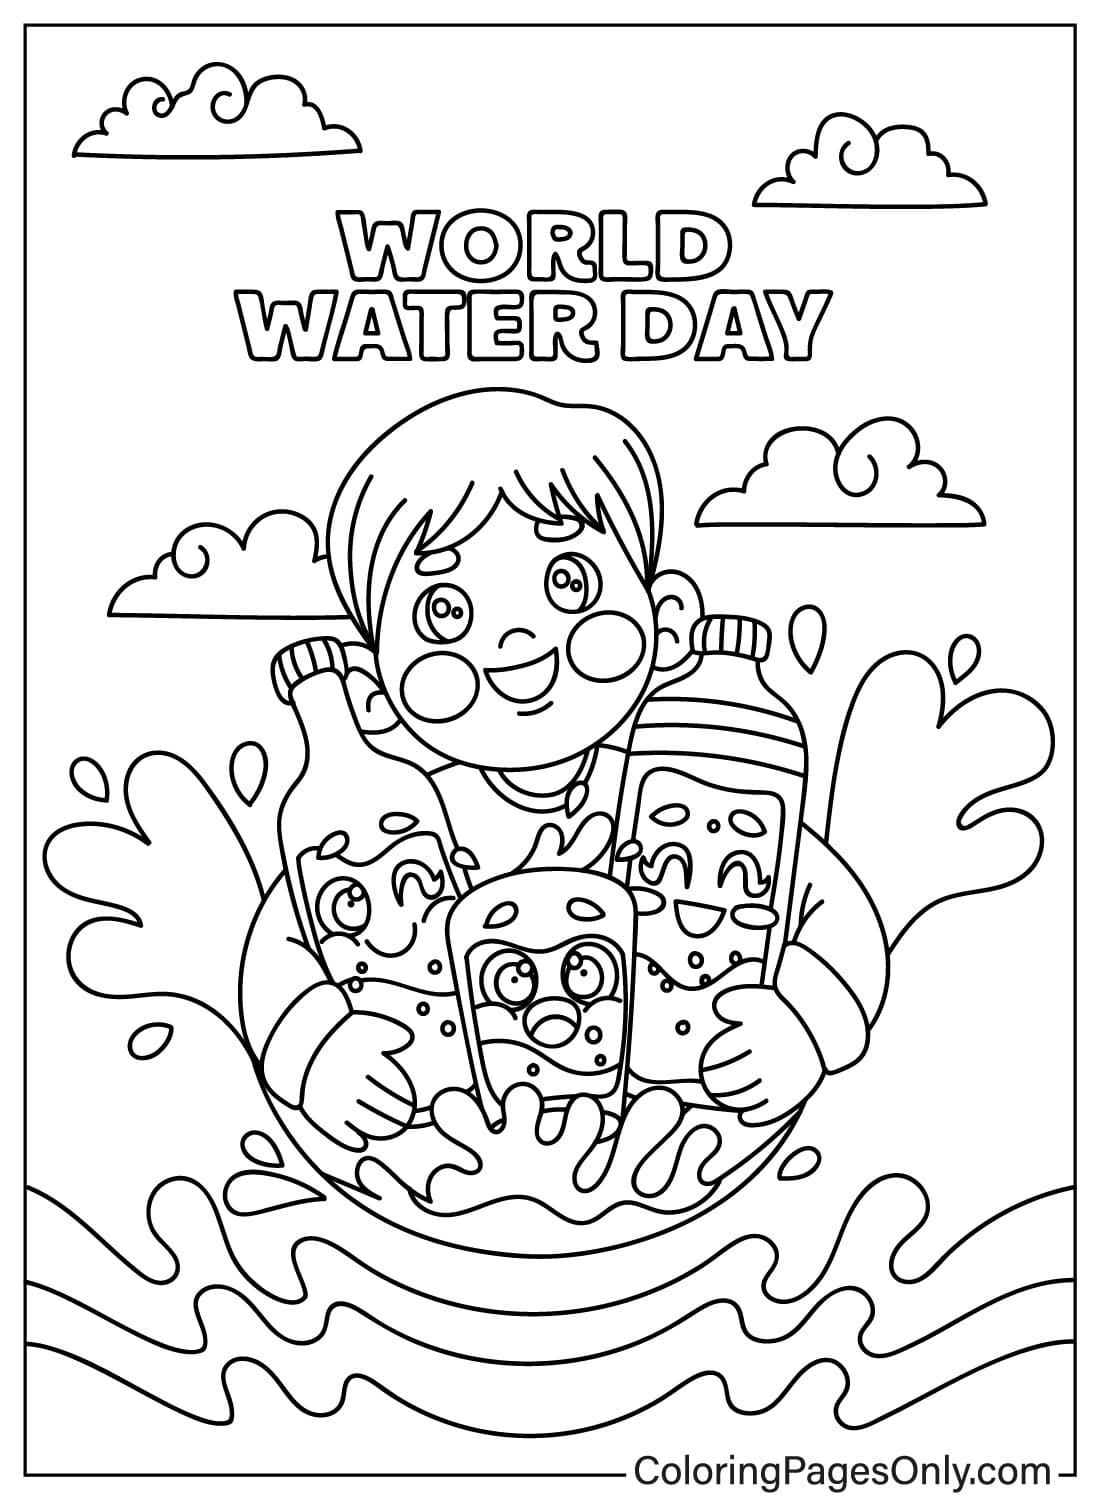 世界水日的儿童和世界水日彩页